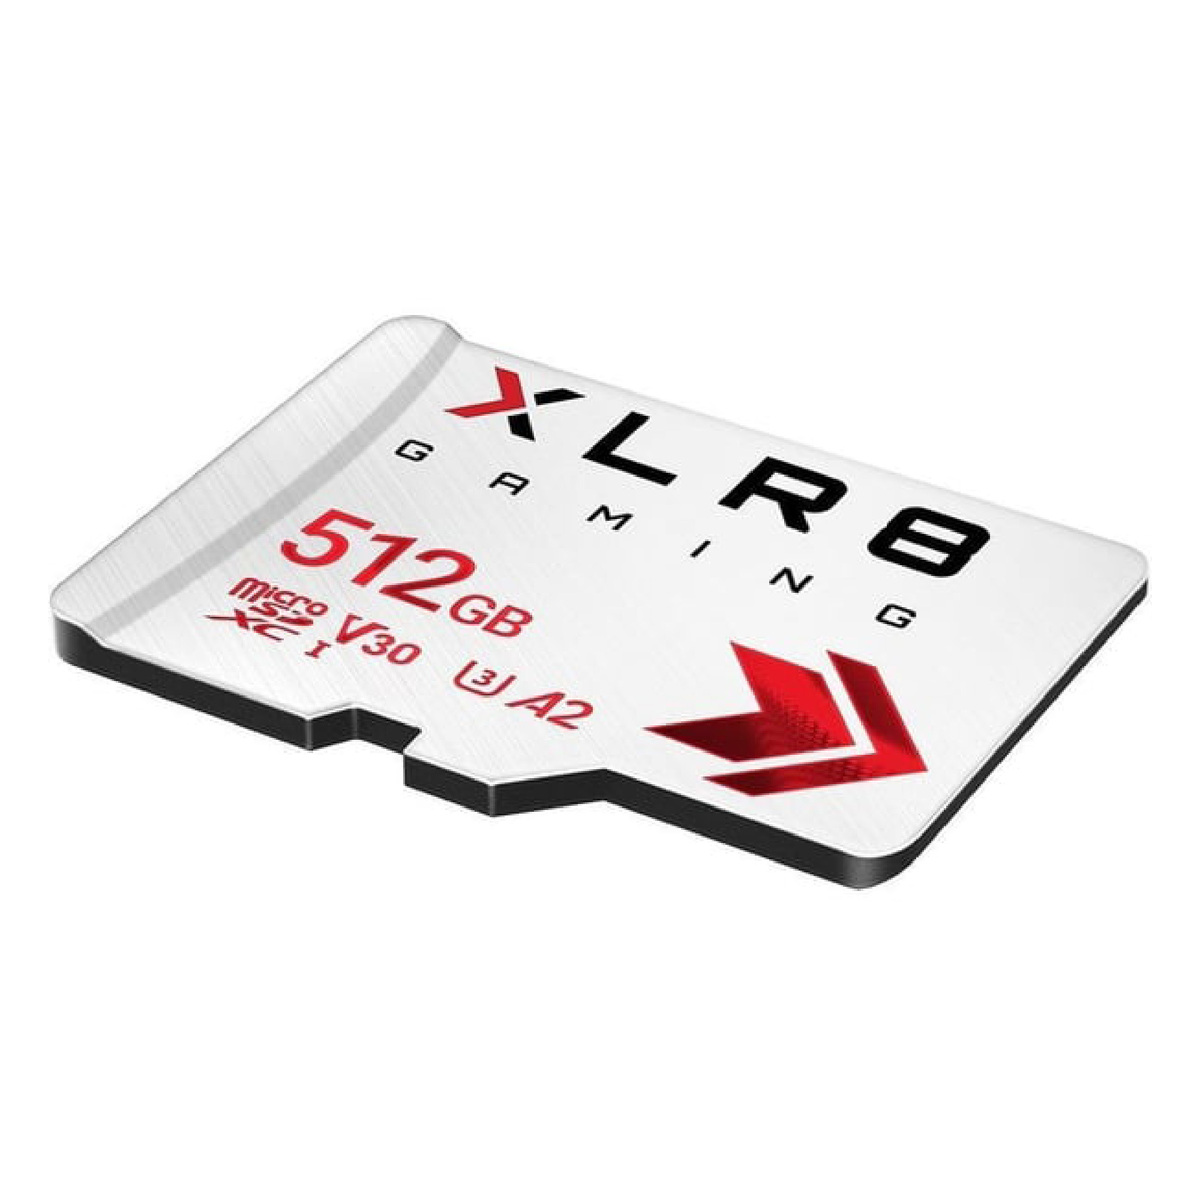 بي ان واي بطاقة ذاكرة للألعاب XLR8 فئة 10 10 U3 V30 512جيجابايت  أبيض P-SDU512V32100XR-GE